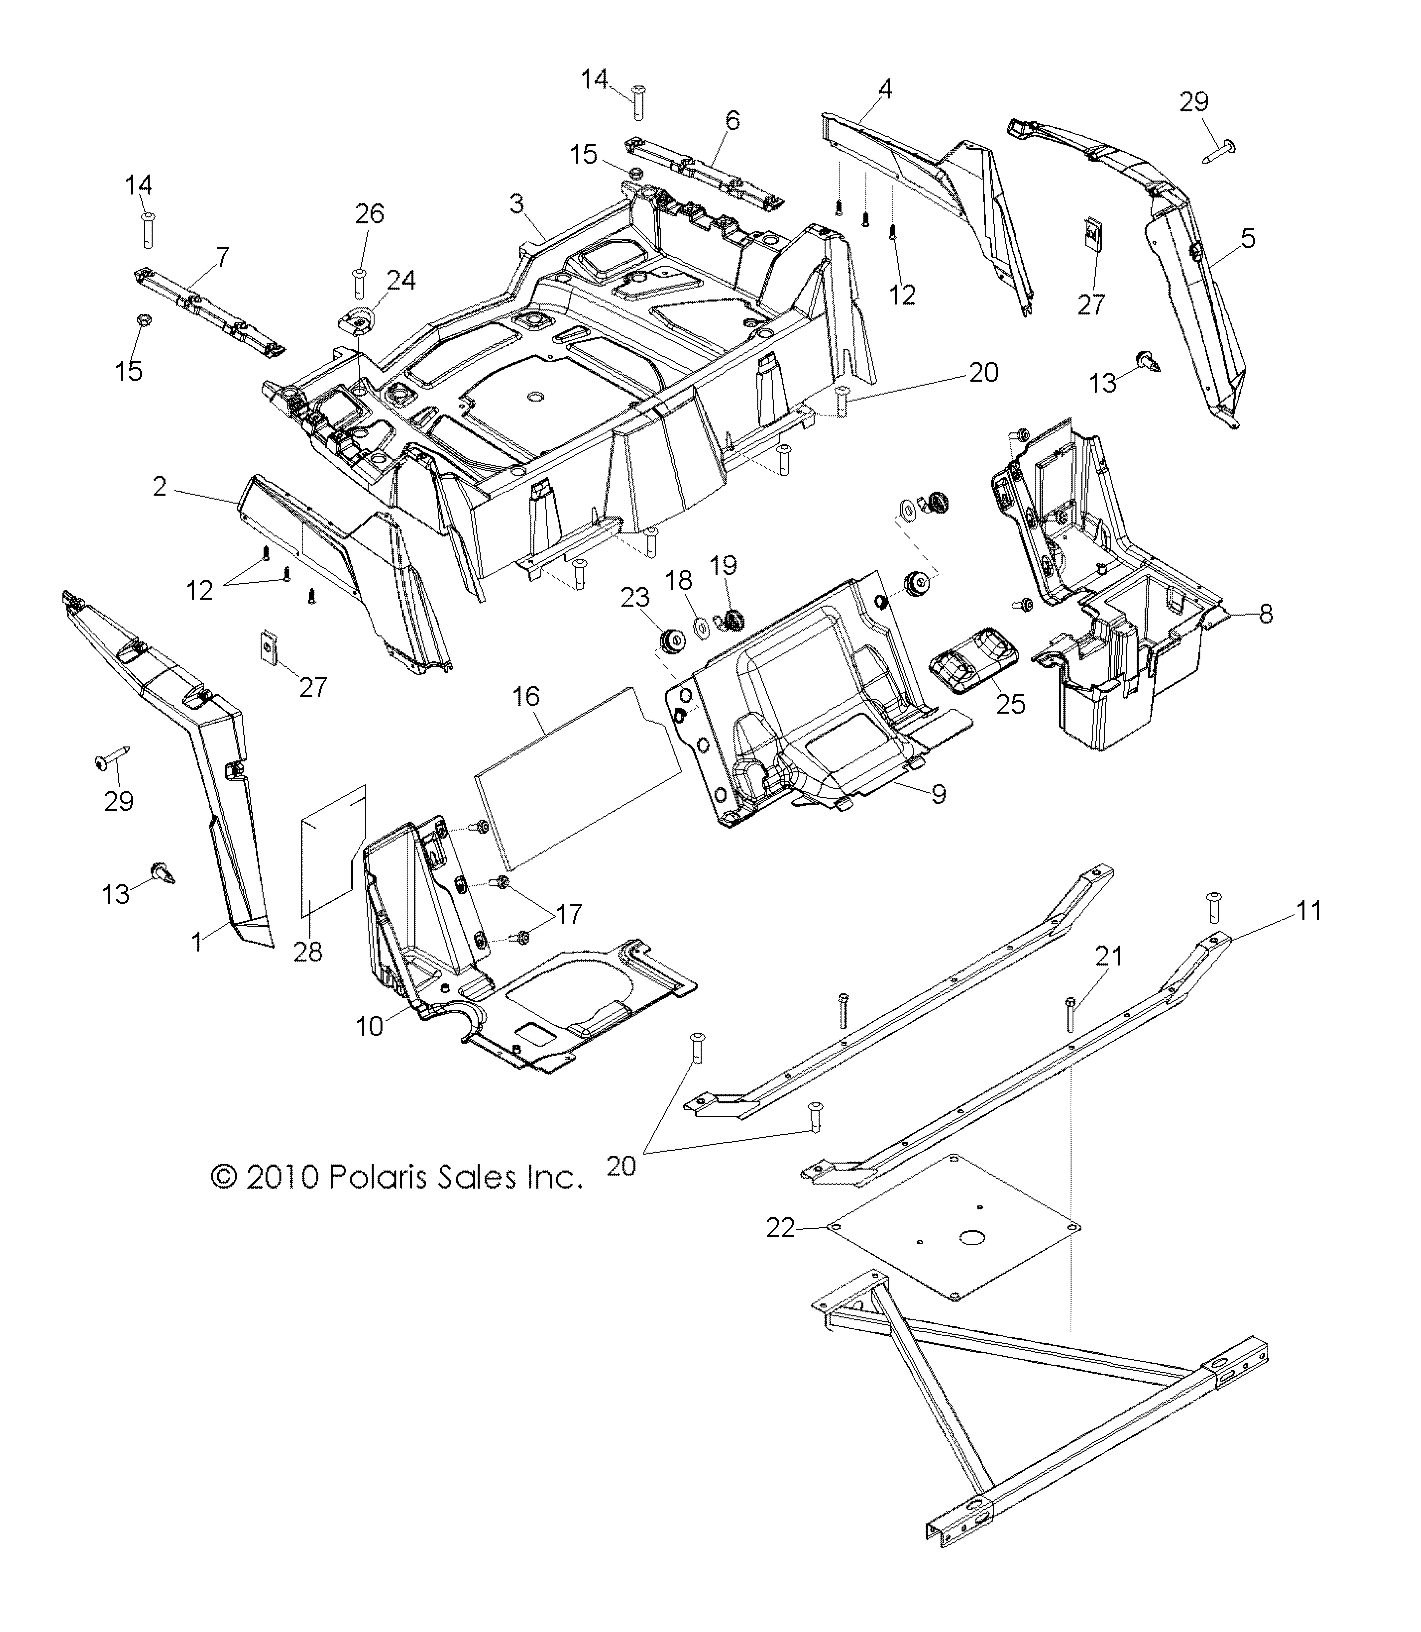 Foto diagrama Polaris que contem a peça 5437474-538